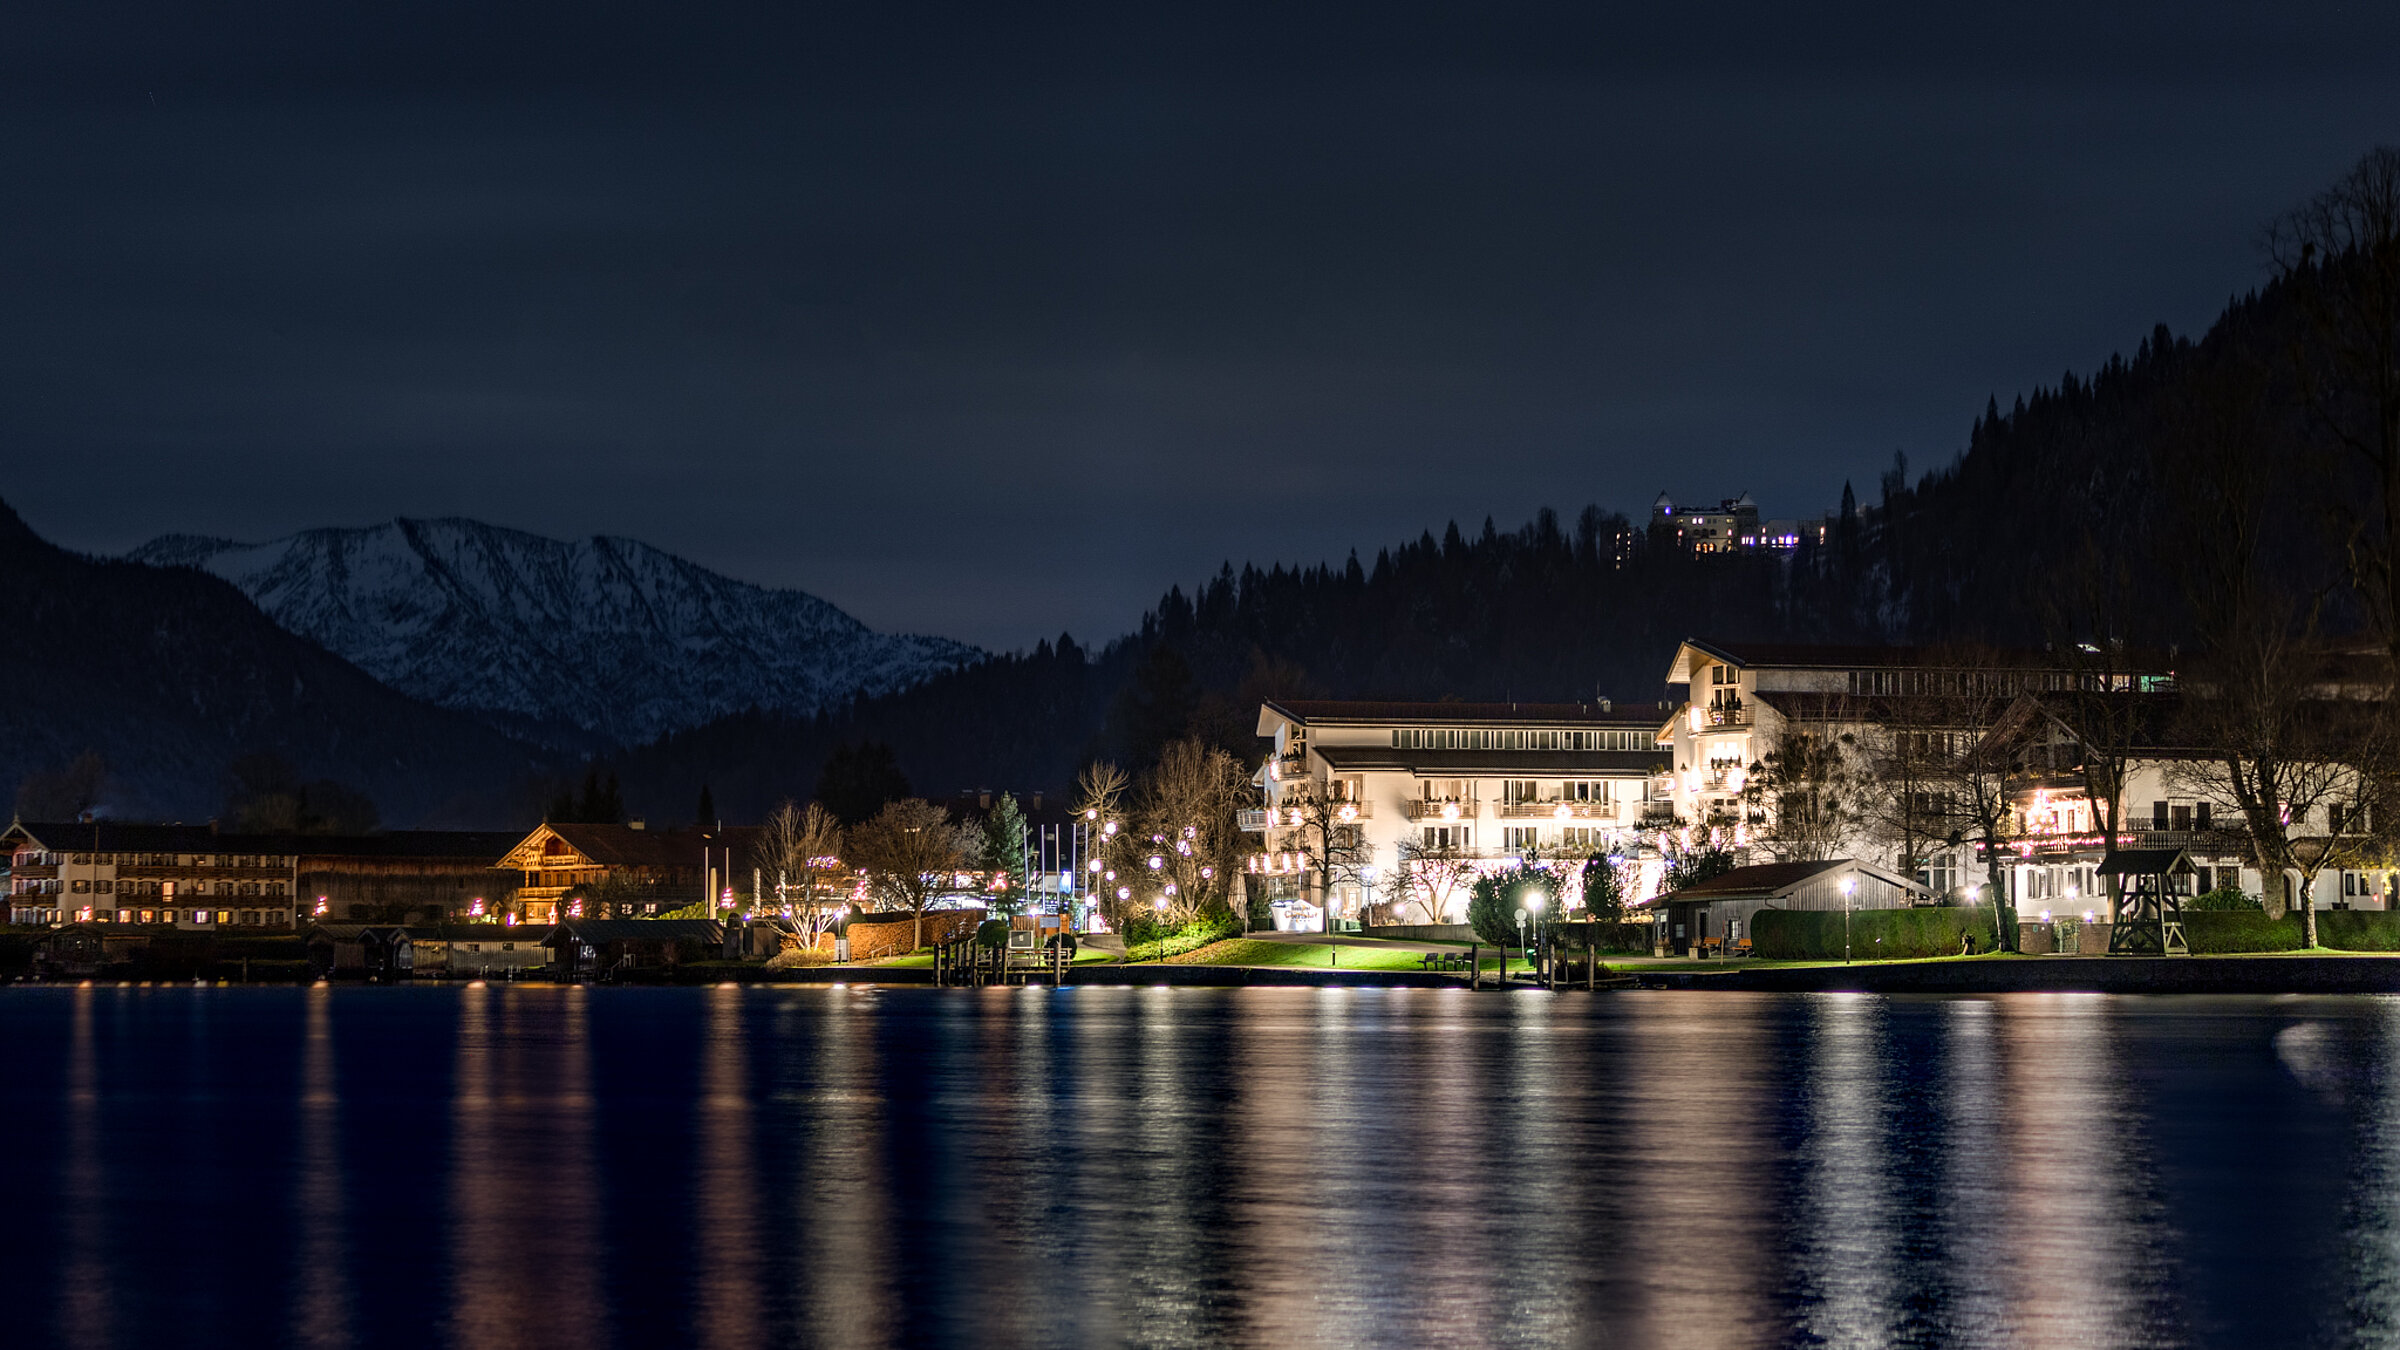 Das Althoff Seehotel Überfahrt am Tegernsee bei Nacht